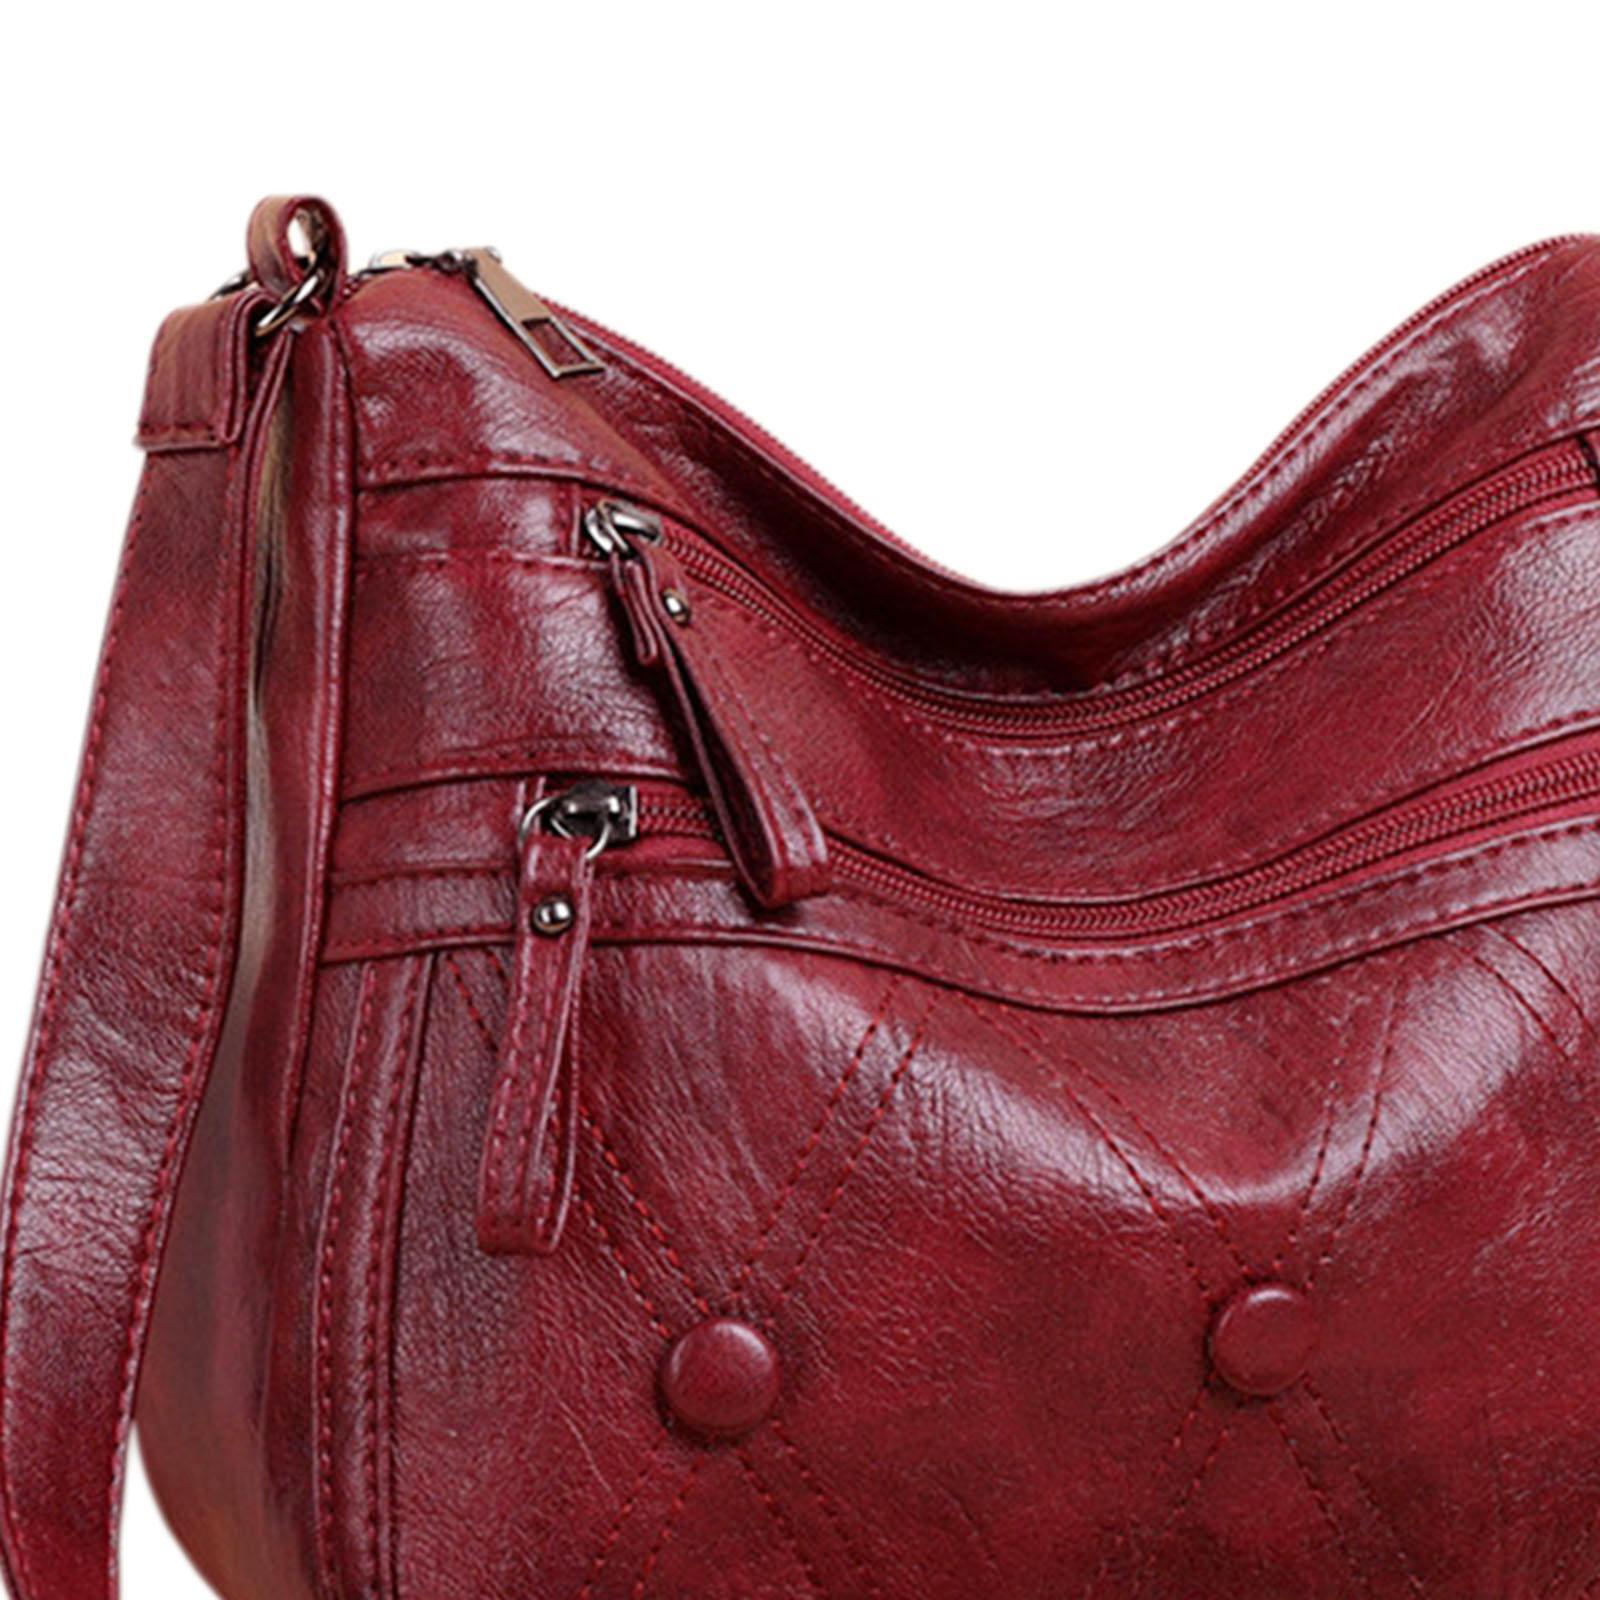 High Quality Shoulder Bag for Women Multi Pockets Handbag Adjustable Shoulder Strap Gift for Mother